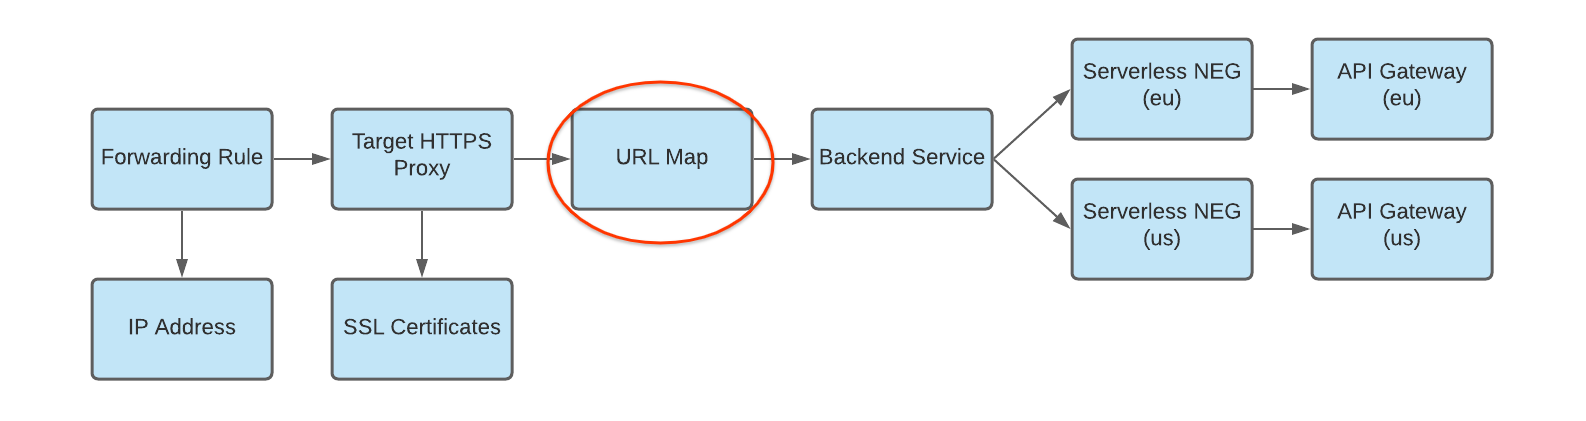 diagramma della mappa di URL al servizio di backend con più deployment